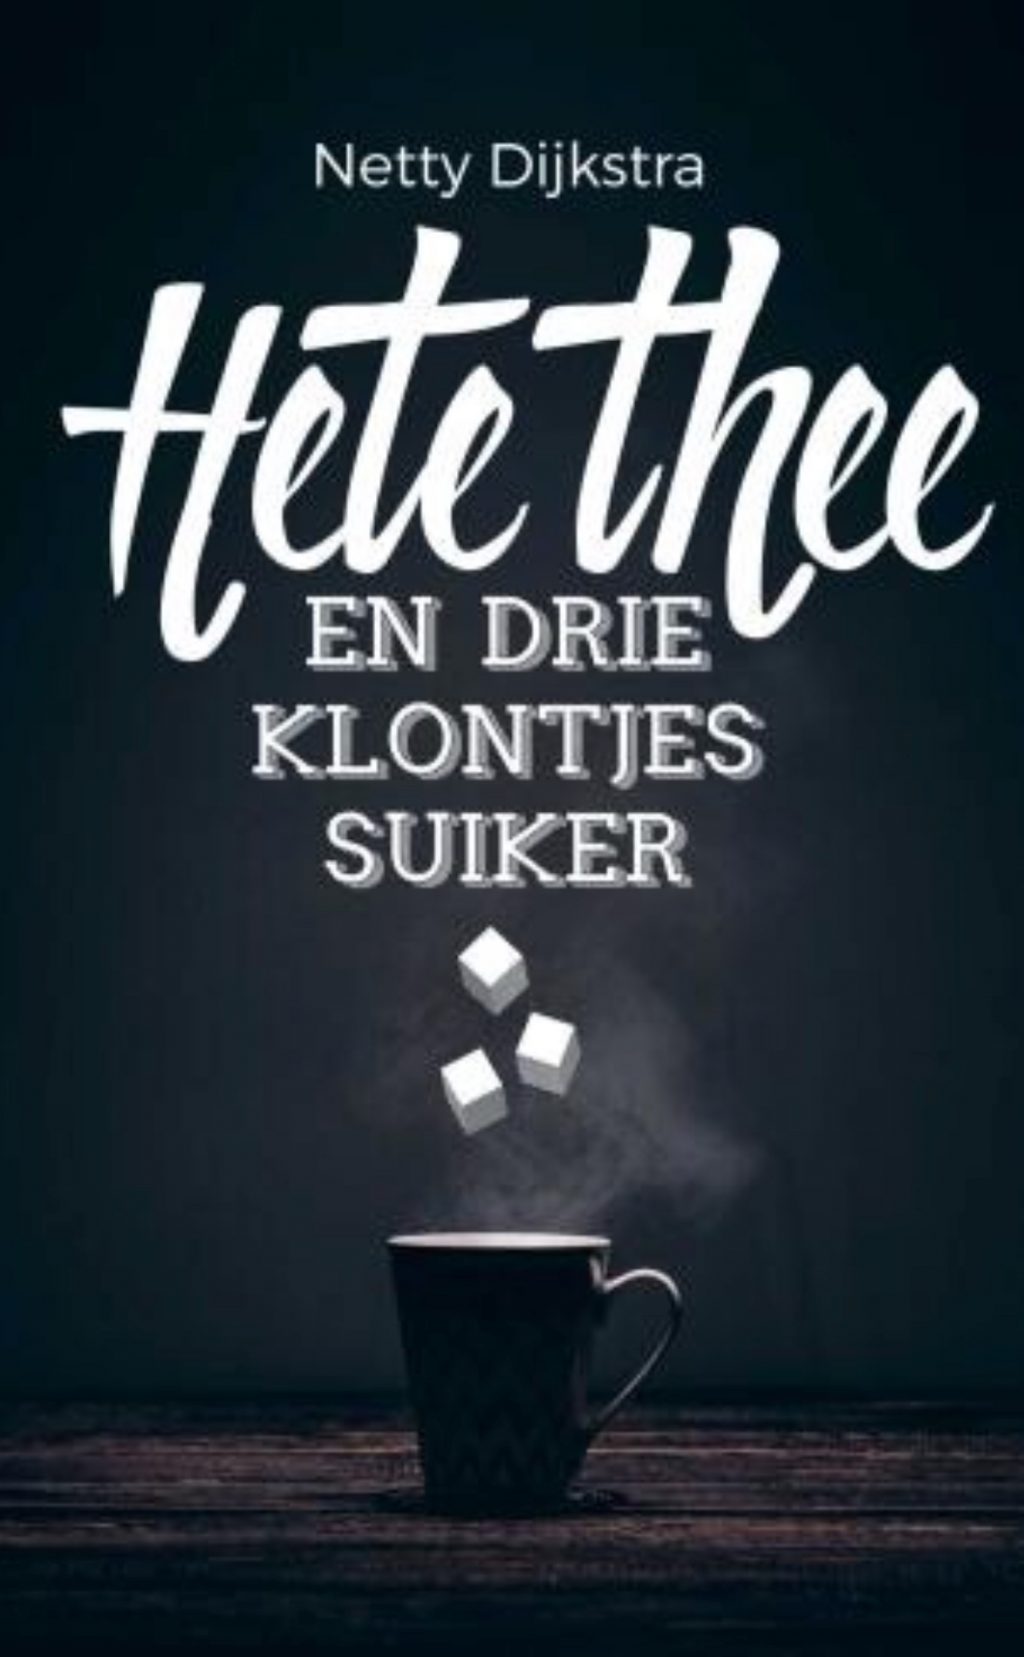 Hete thee en drie klontjes suiker – Netty Dijkstra